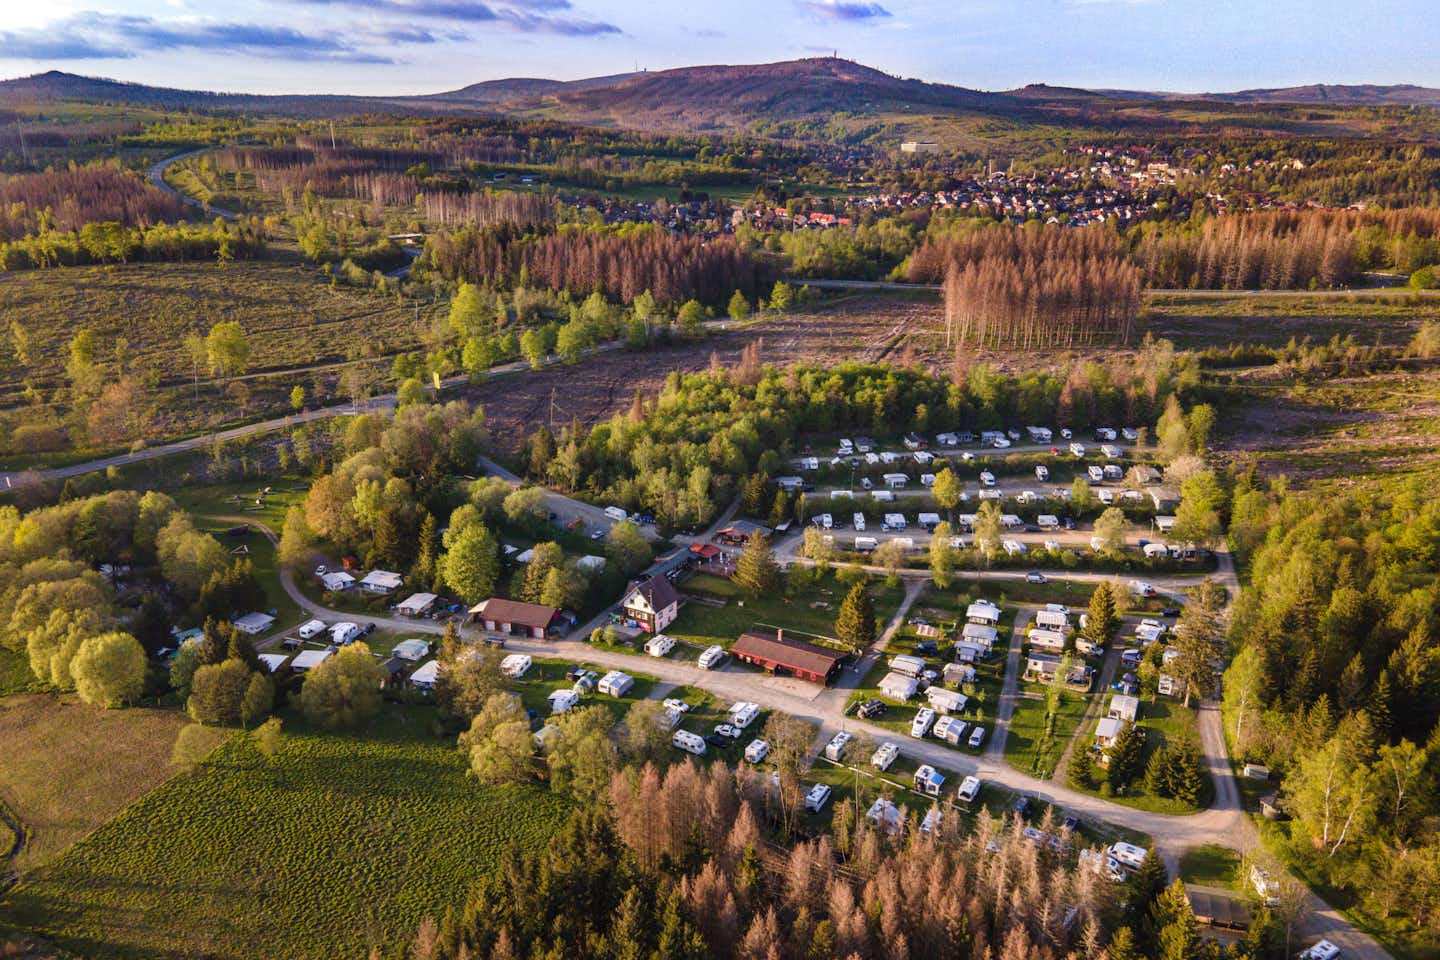 Vodatent @ Camping Braunlage  - Luftaufnahme des Campingplatzes umgeben von Wald und Feldern